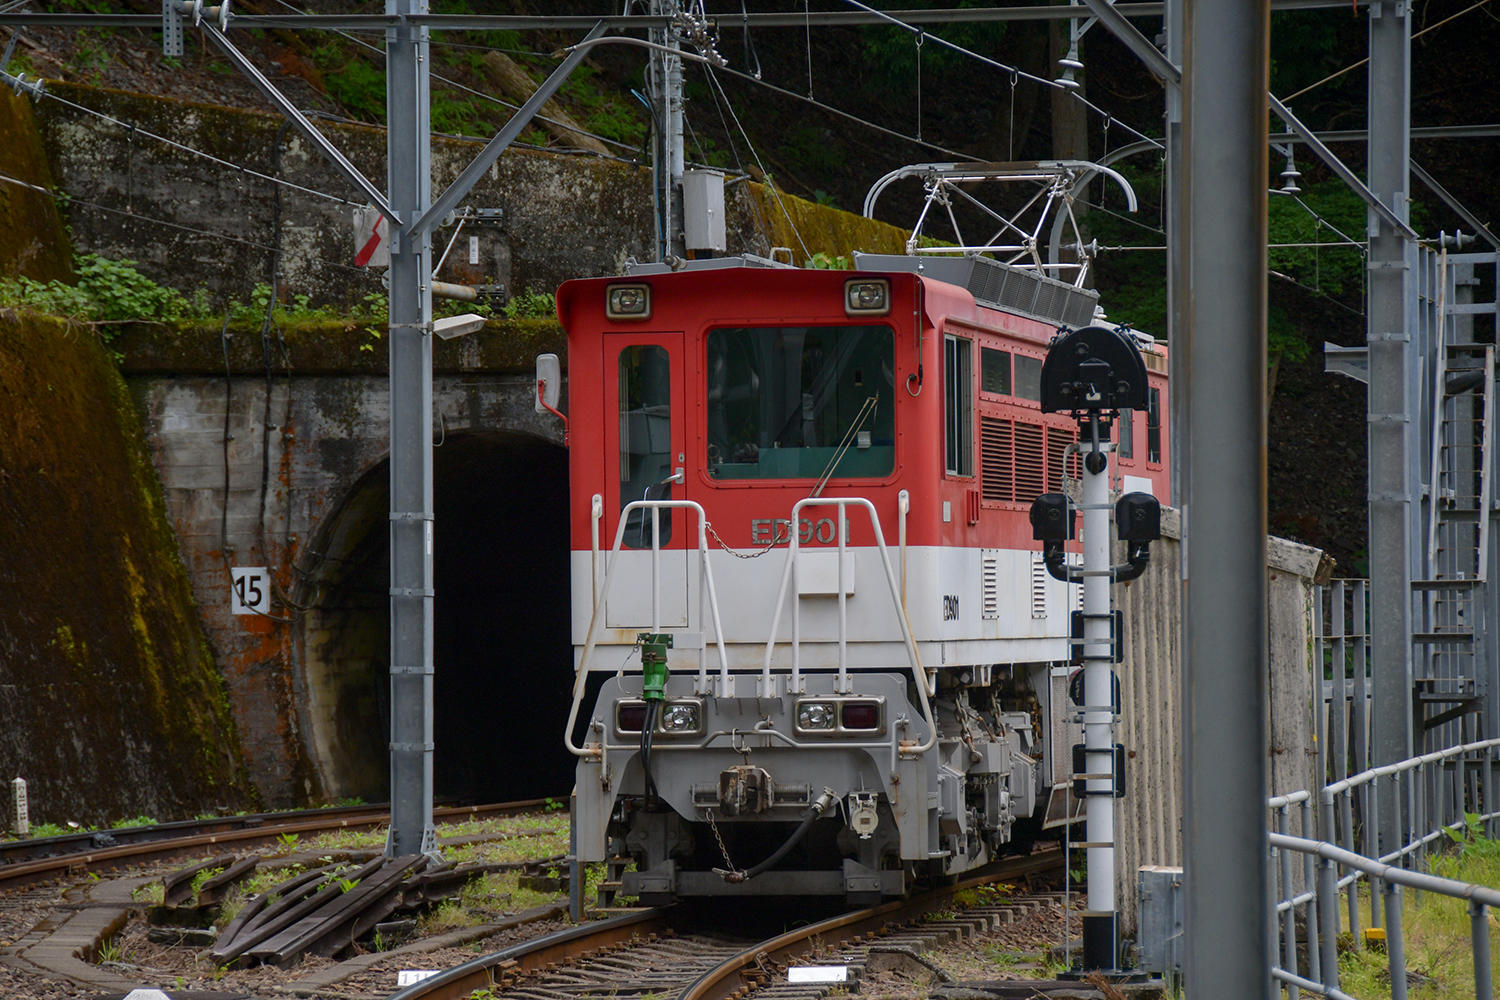 アプトいちしろ駅からお隣の長島ダム駅まで、急勾配を上るための鉄道システム・アプト式機関車を連結して、走っているのだそう。